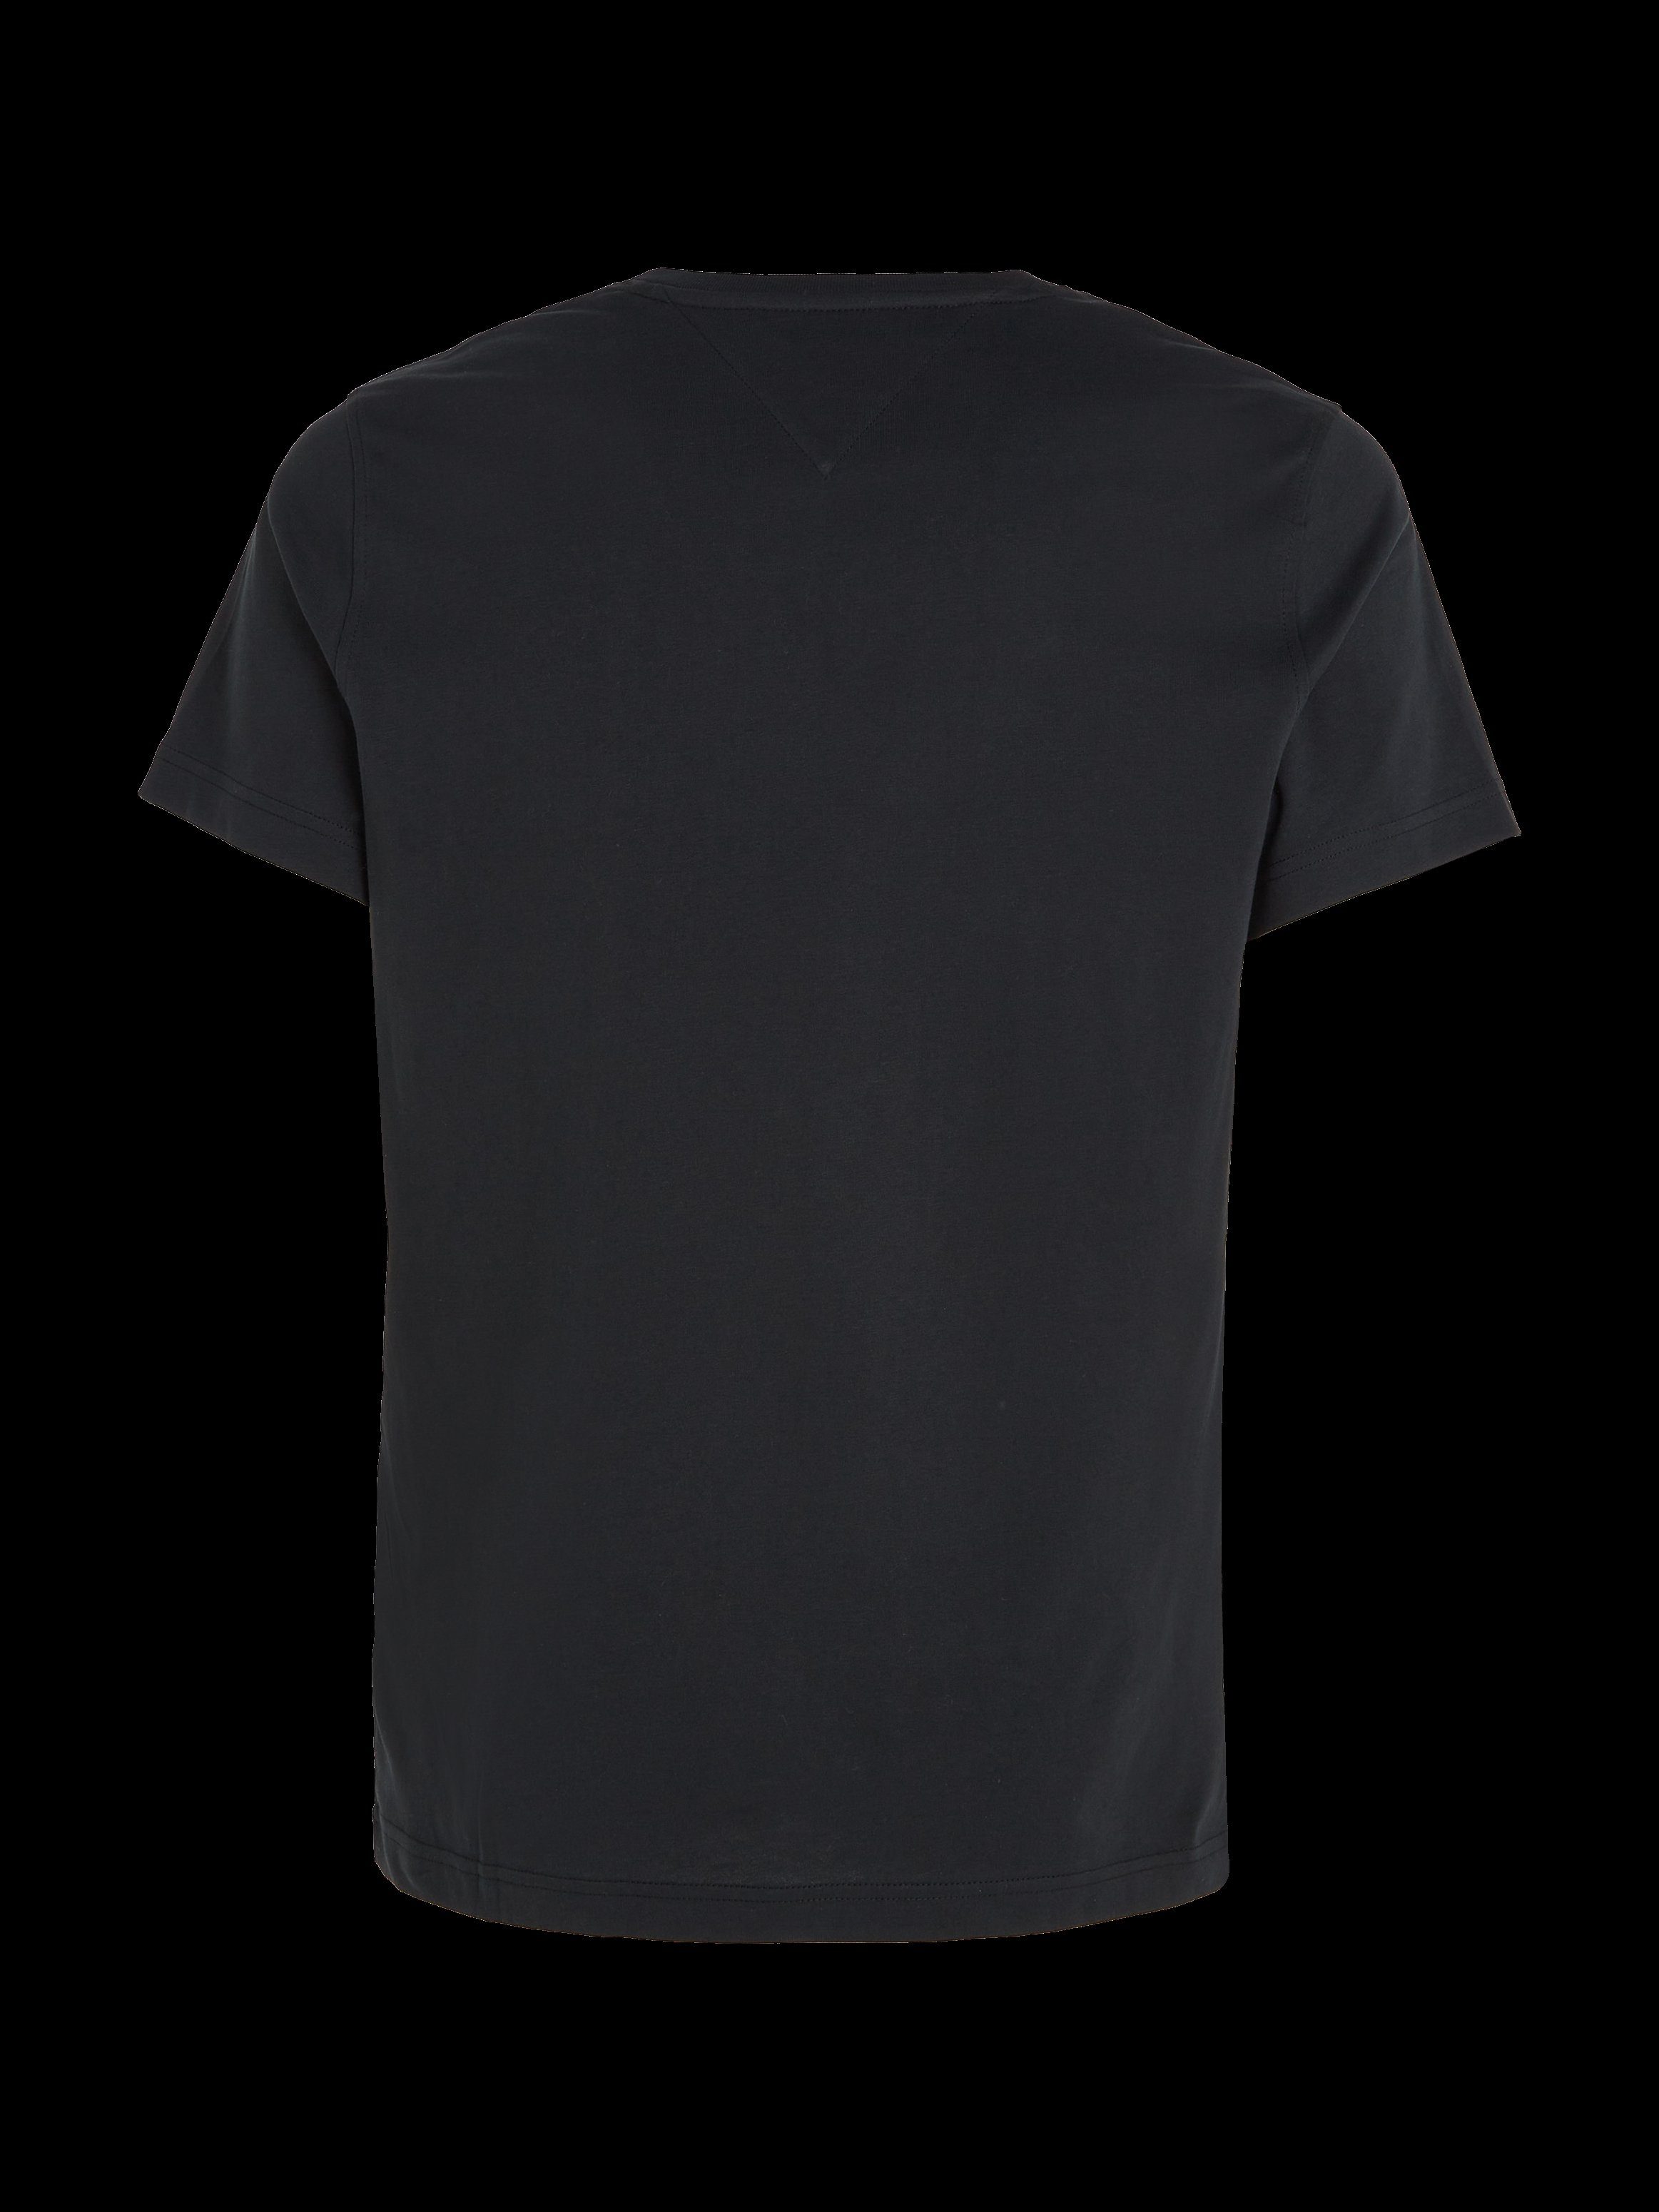 Tommy ORIGINAL mit Jeans TJM TEE dezenter black T-Shirt JERSEY und V-Ausschnitt tommy V 078 NECK Logo-Flag